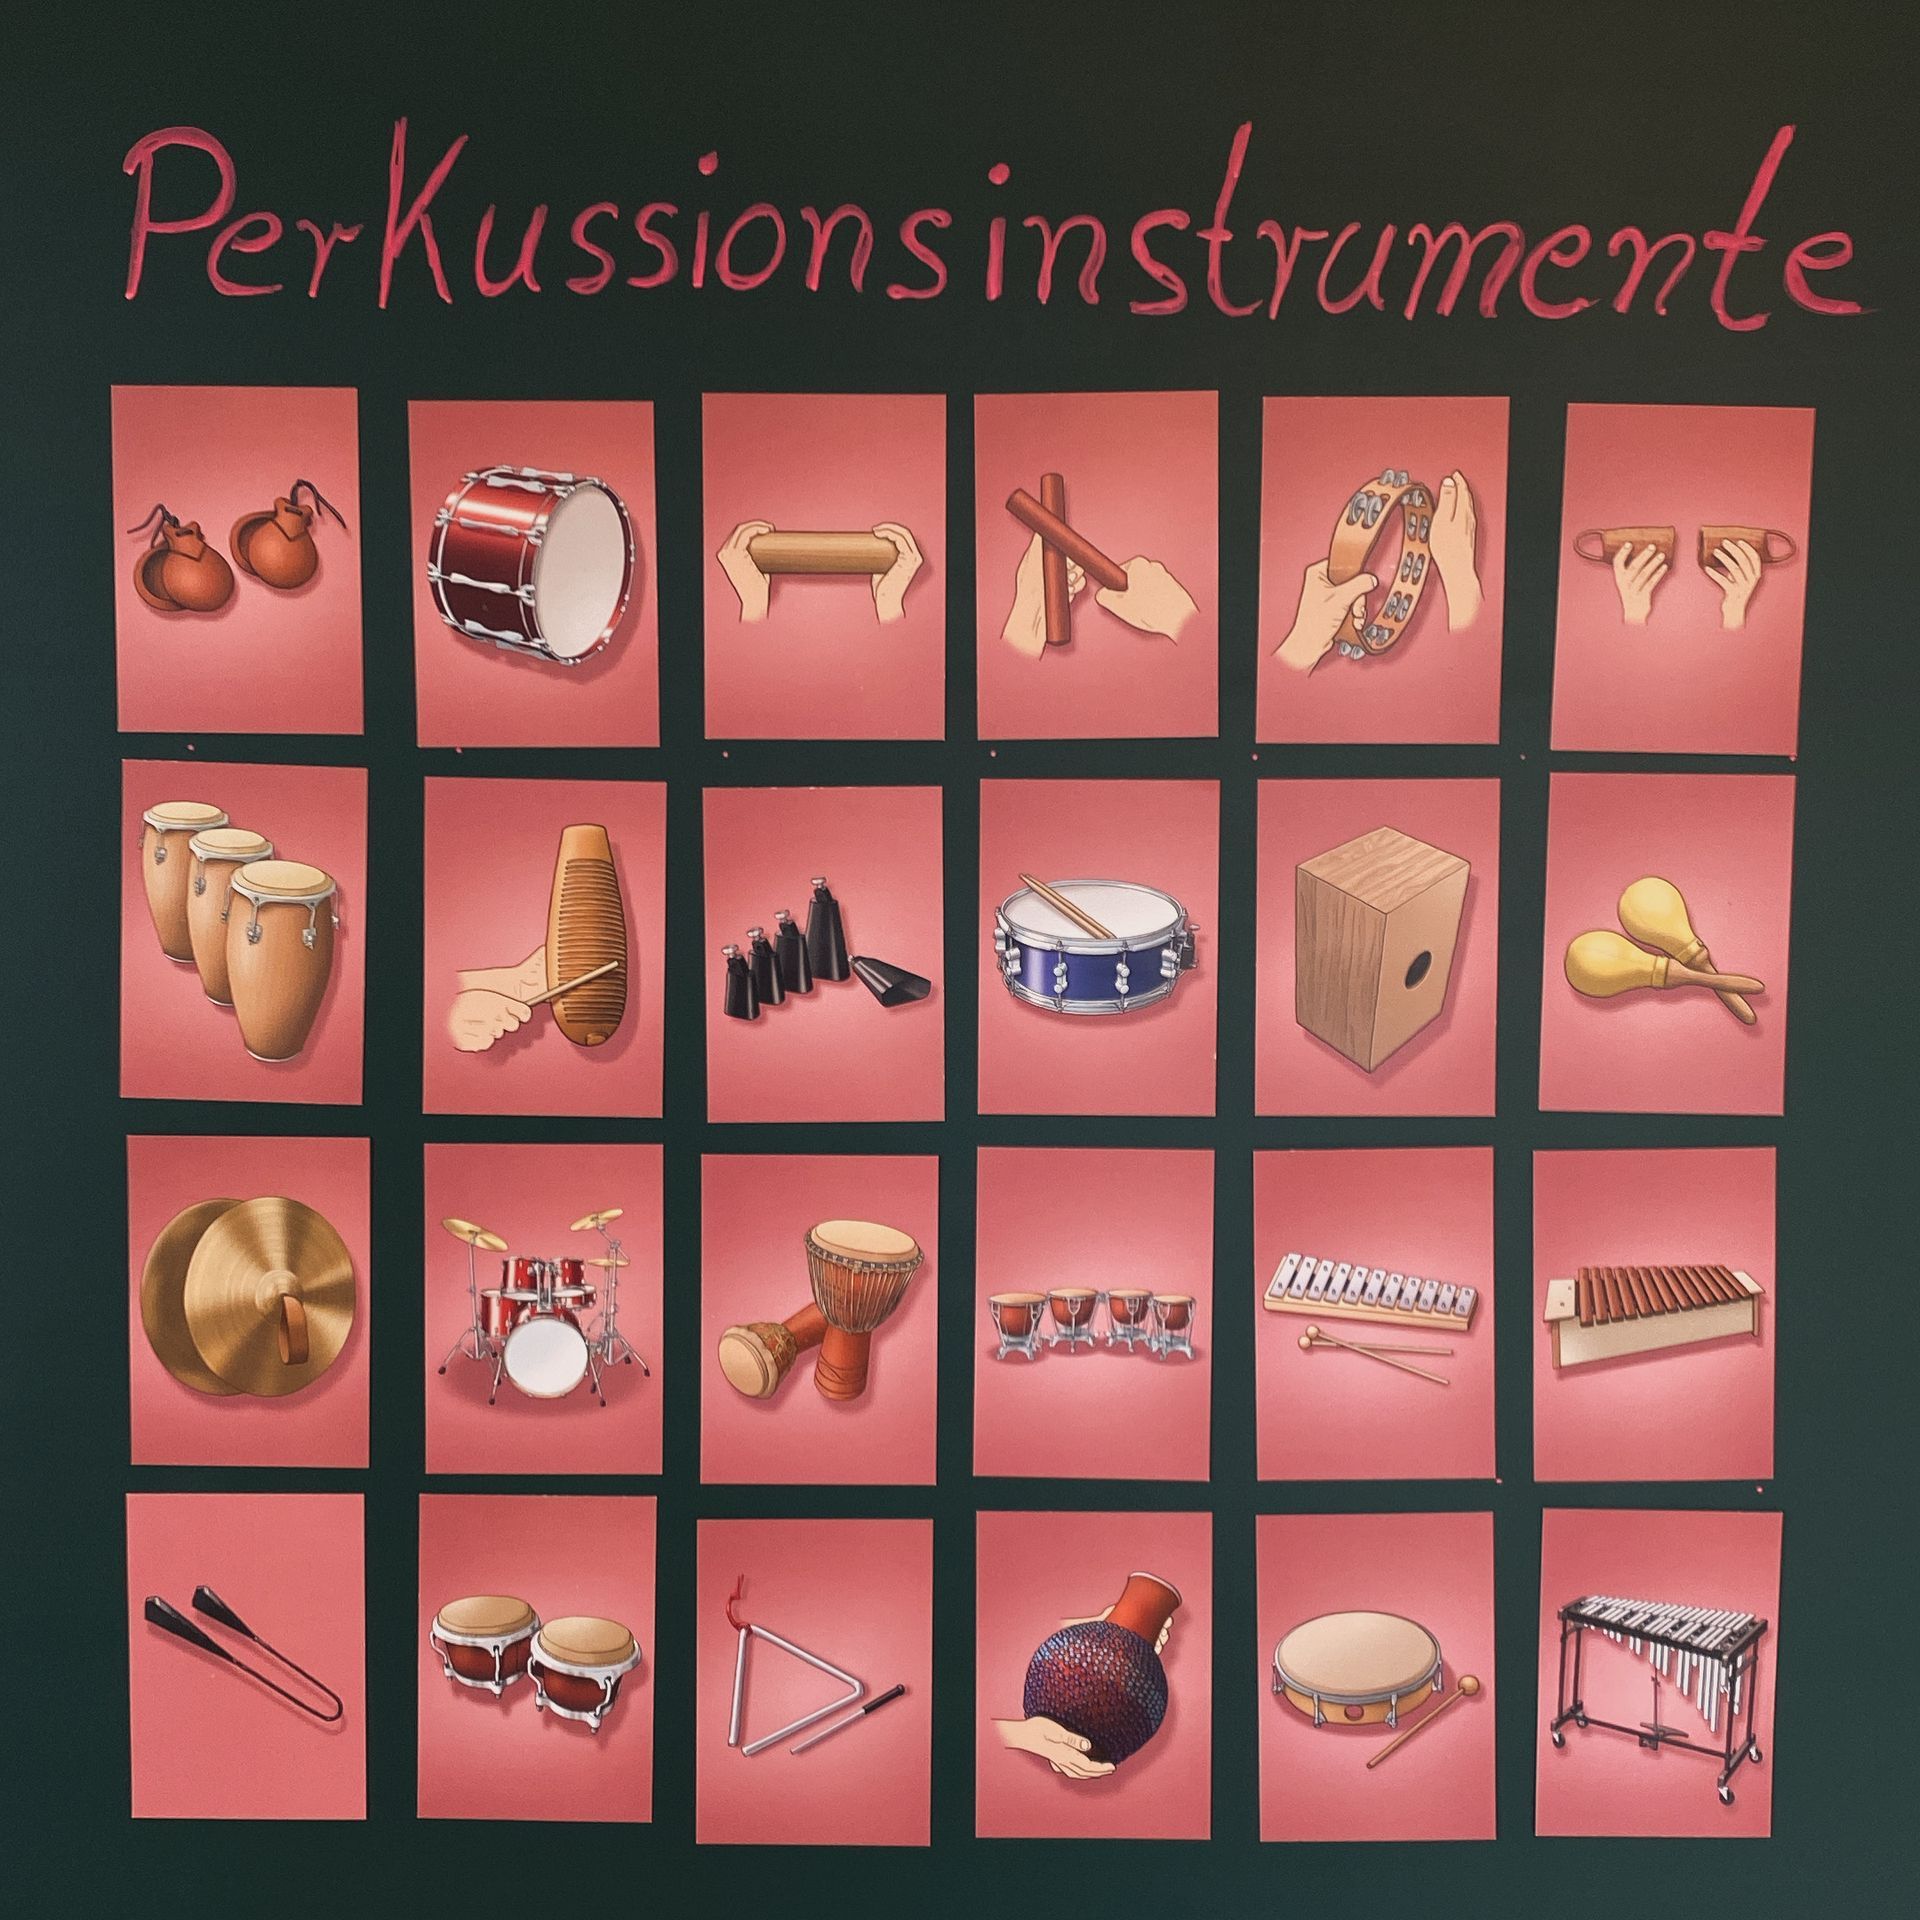  Anschauliche Abbildungen von Perkussionsinstrumenten